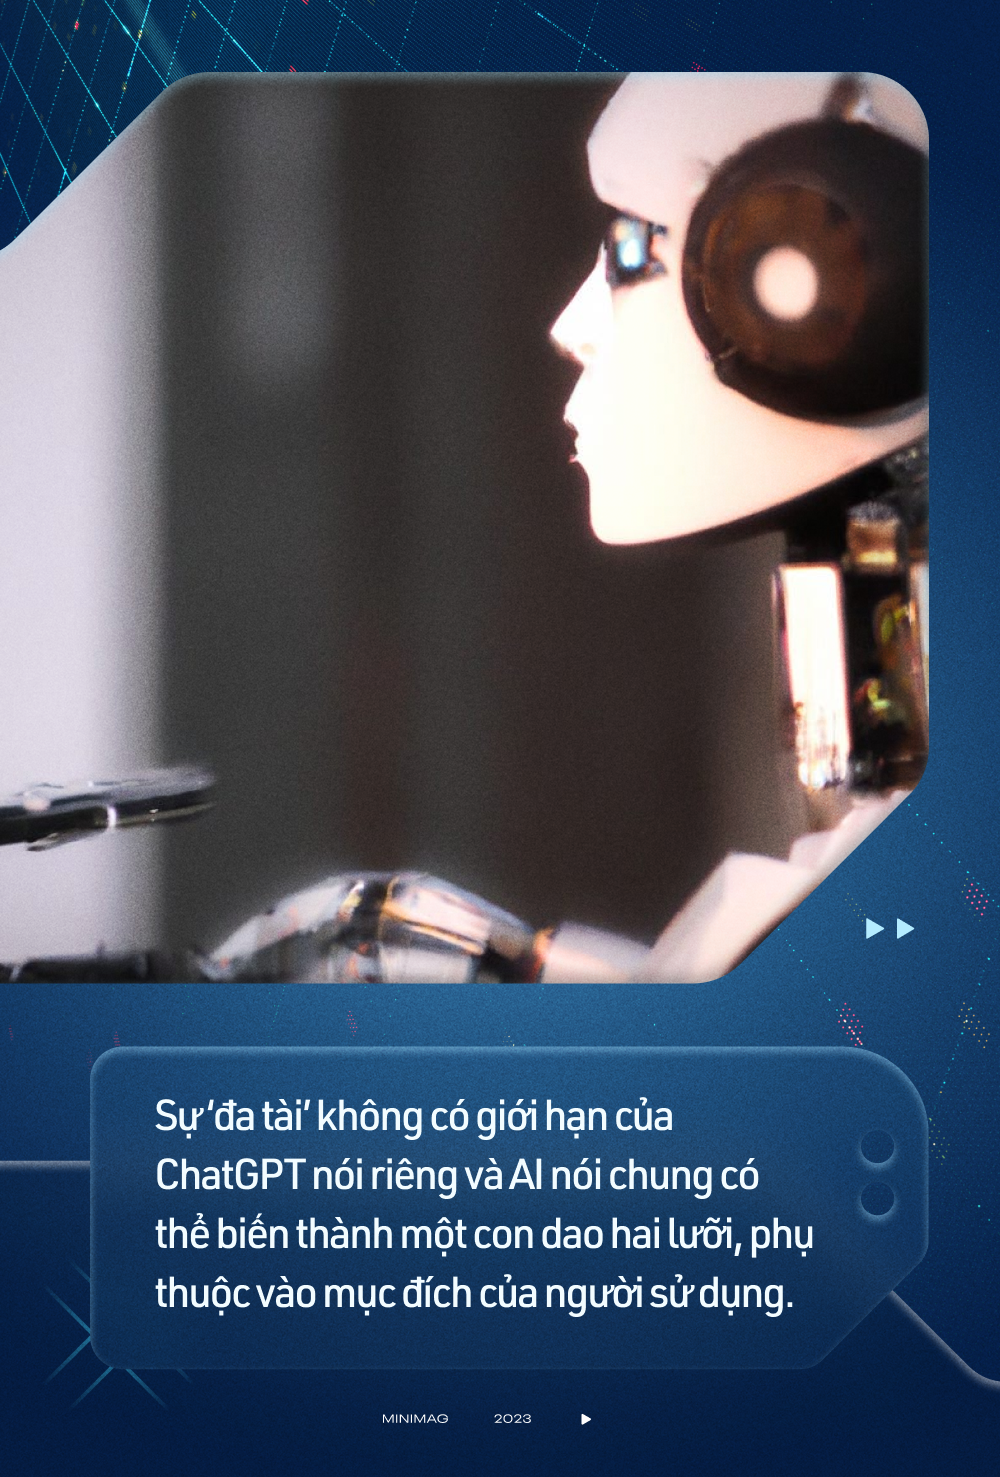 Không biết lập trình nhưng vẫn viết được mã độc: Cách chatbot AI thông minh nhất thế giới trở thành đồng phạm của giới hacker mũ đen - Ảnh 2.